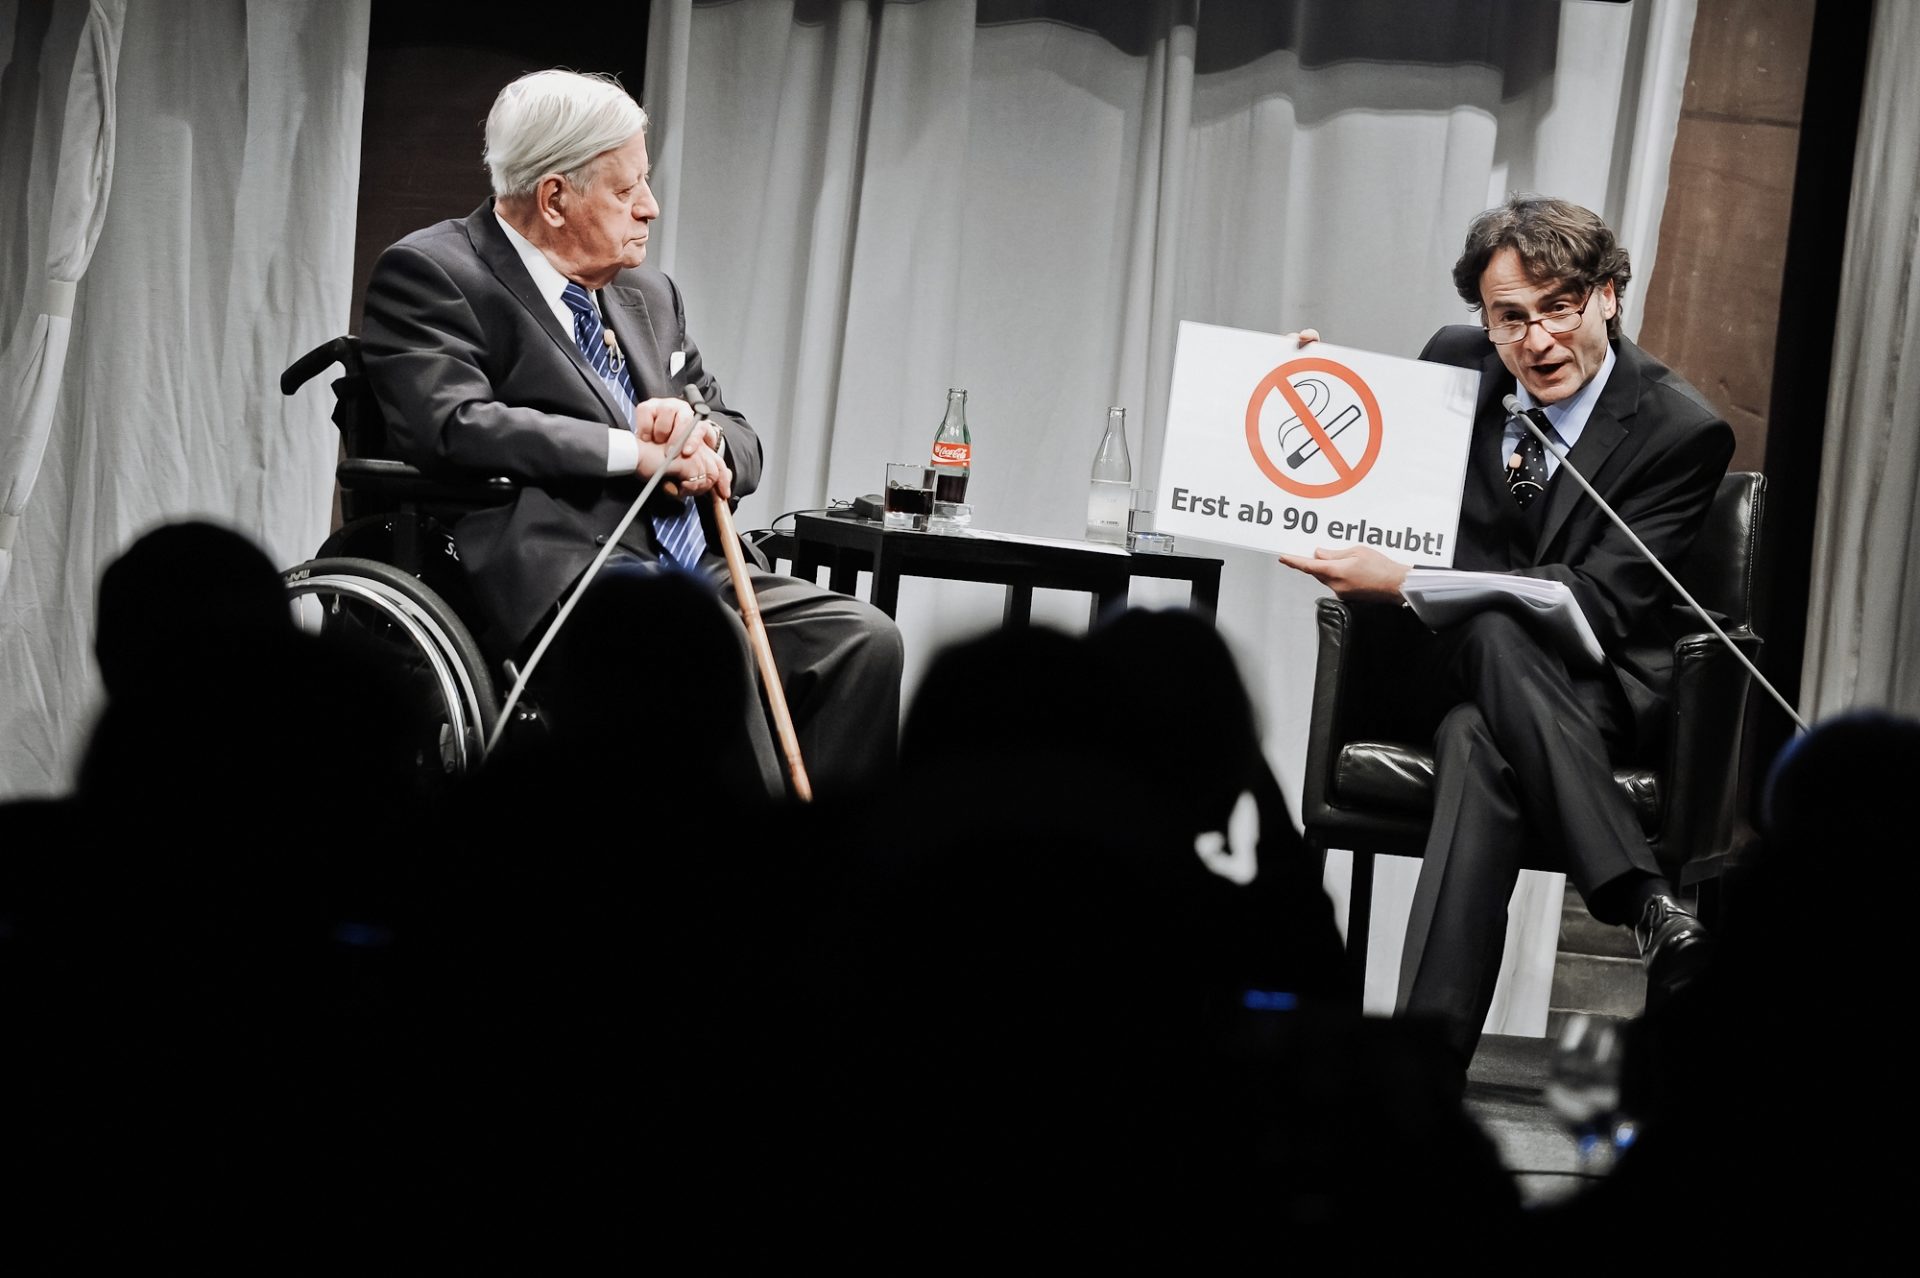 Helmut Schmidt beim 50. Stndehaustreff am 19/03/2012